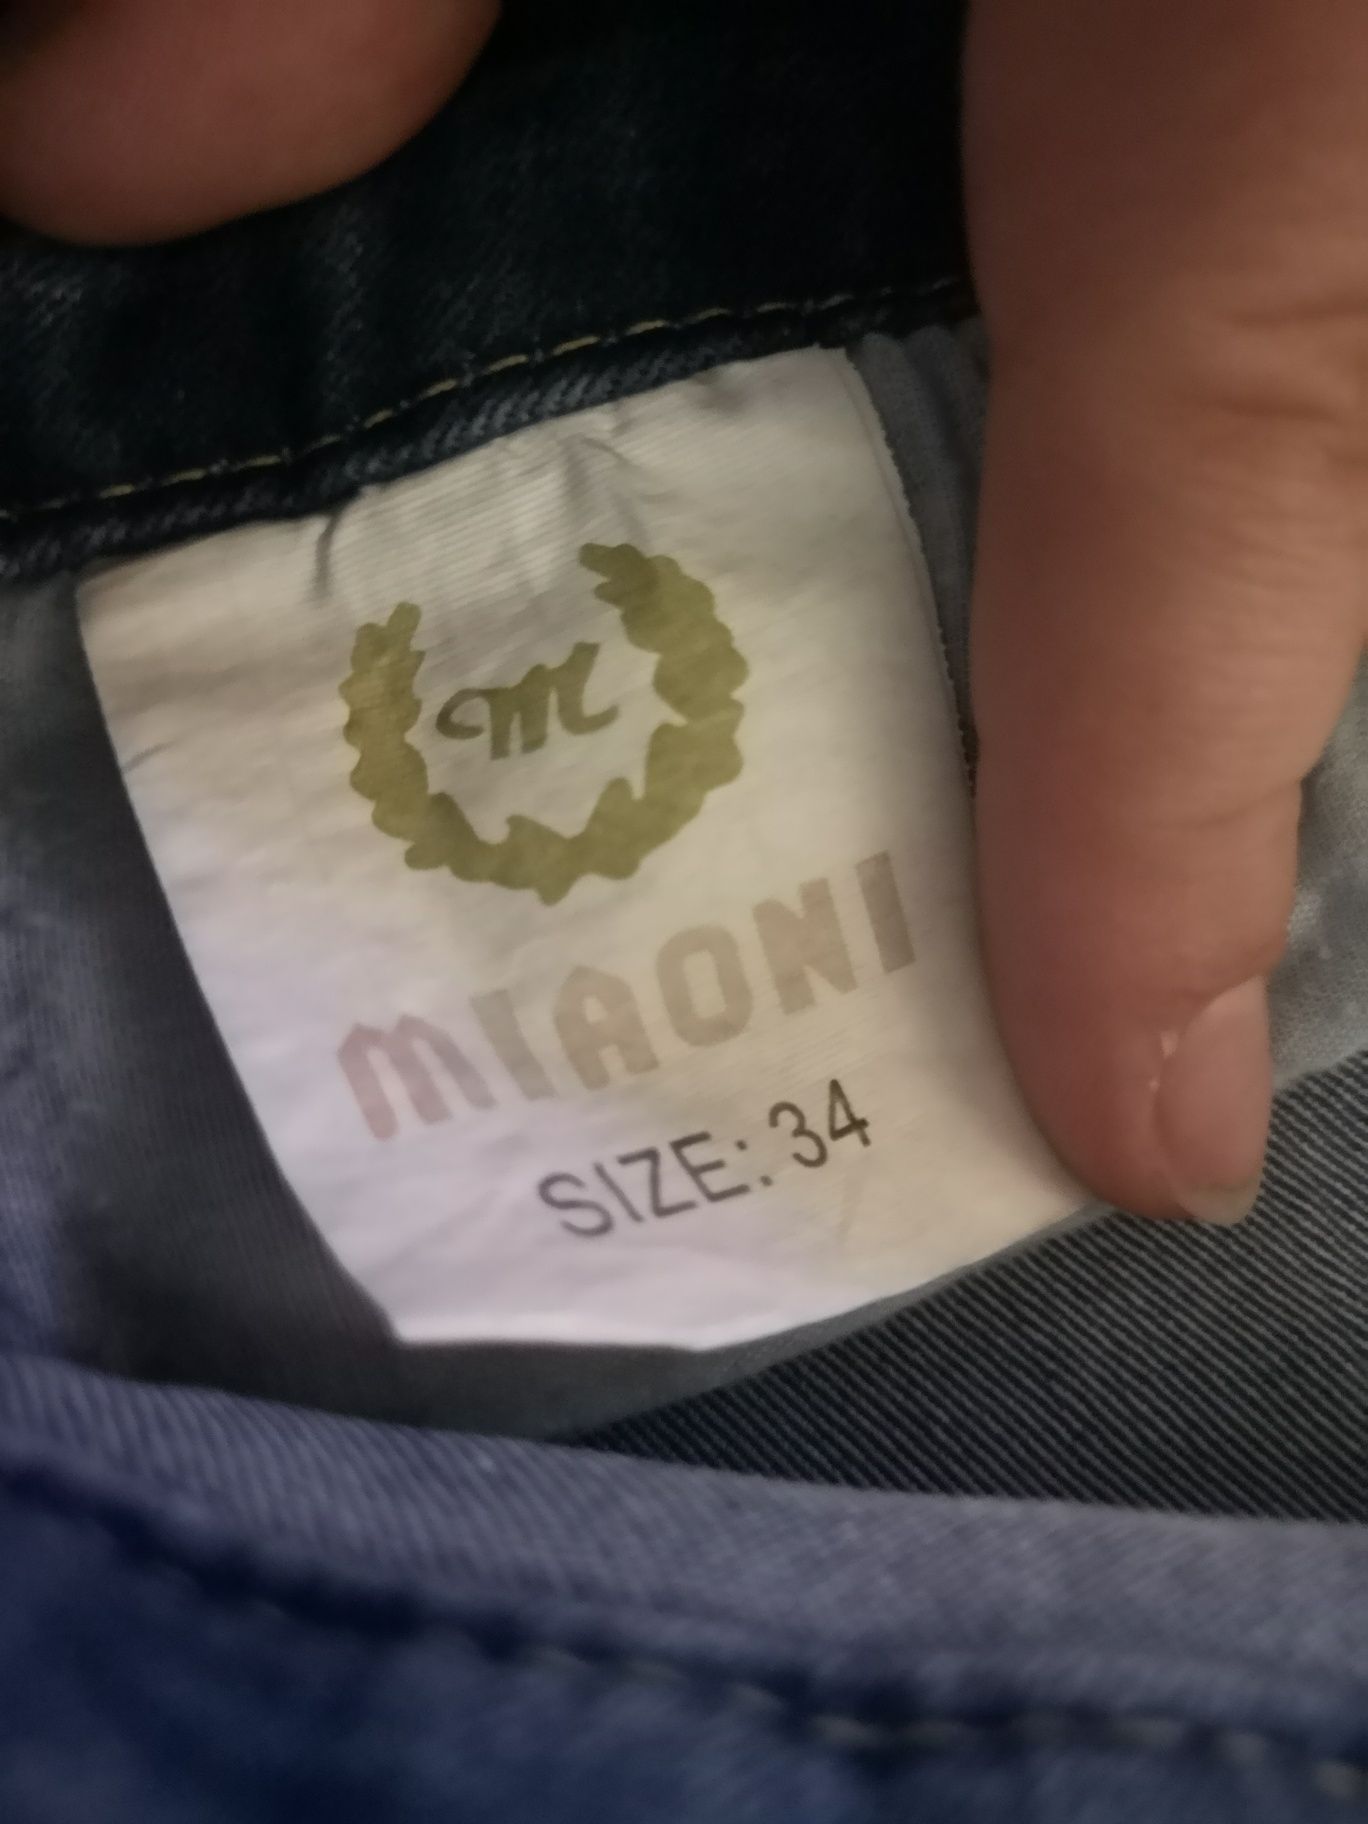 Spodnie damskie jeansy r. 34 NOWE